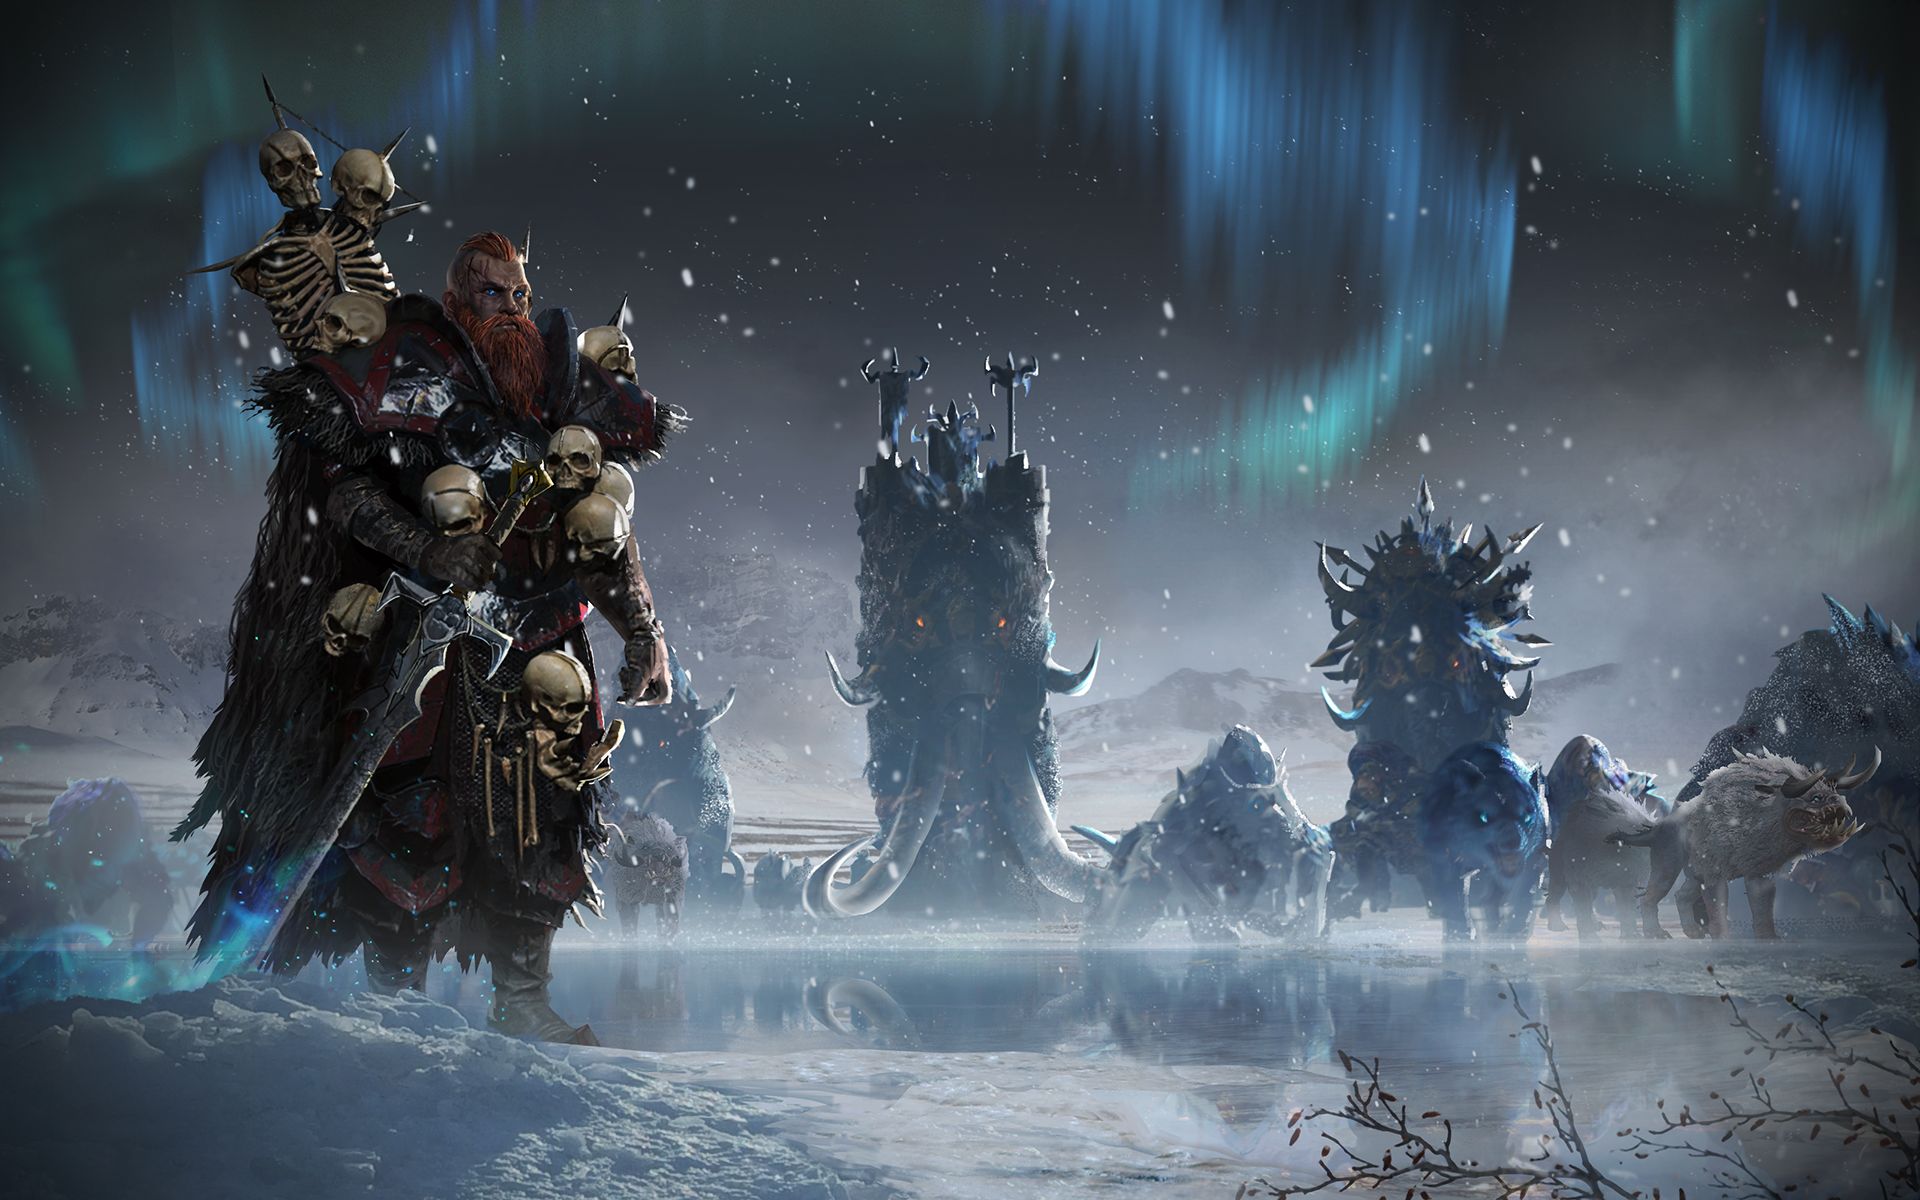 Descargar fondos de escritorio de Total War: Warhammer HD